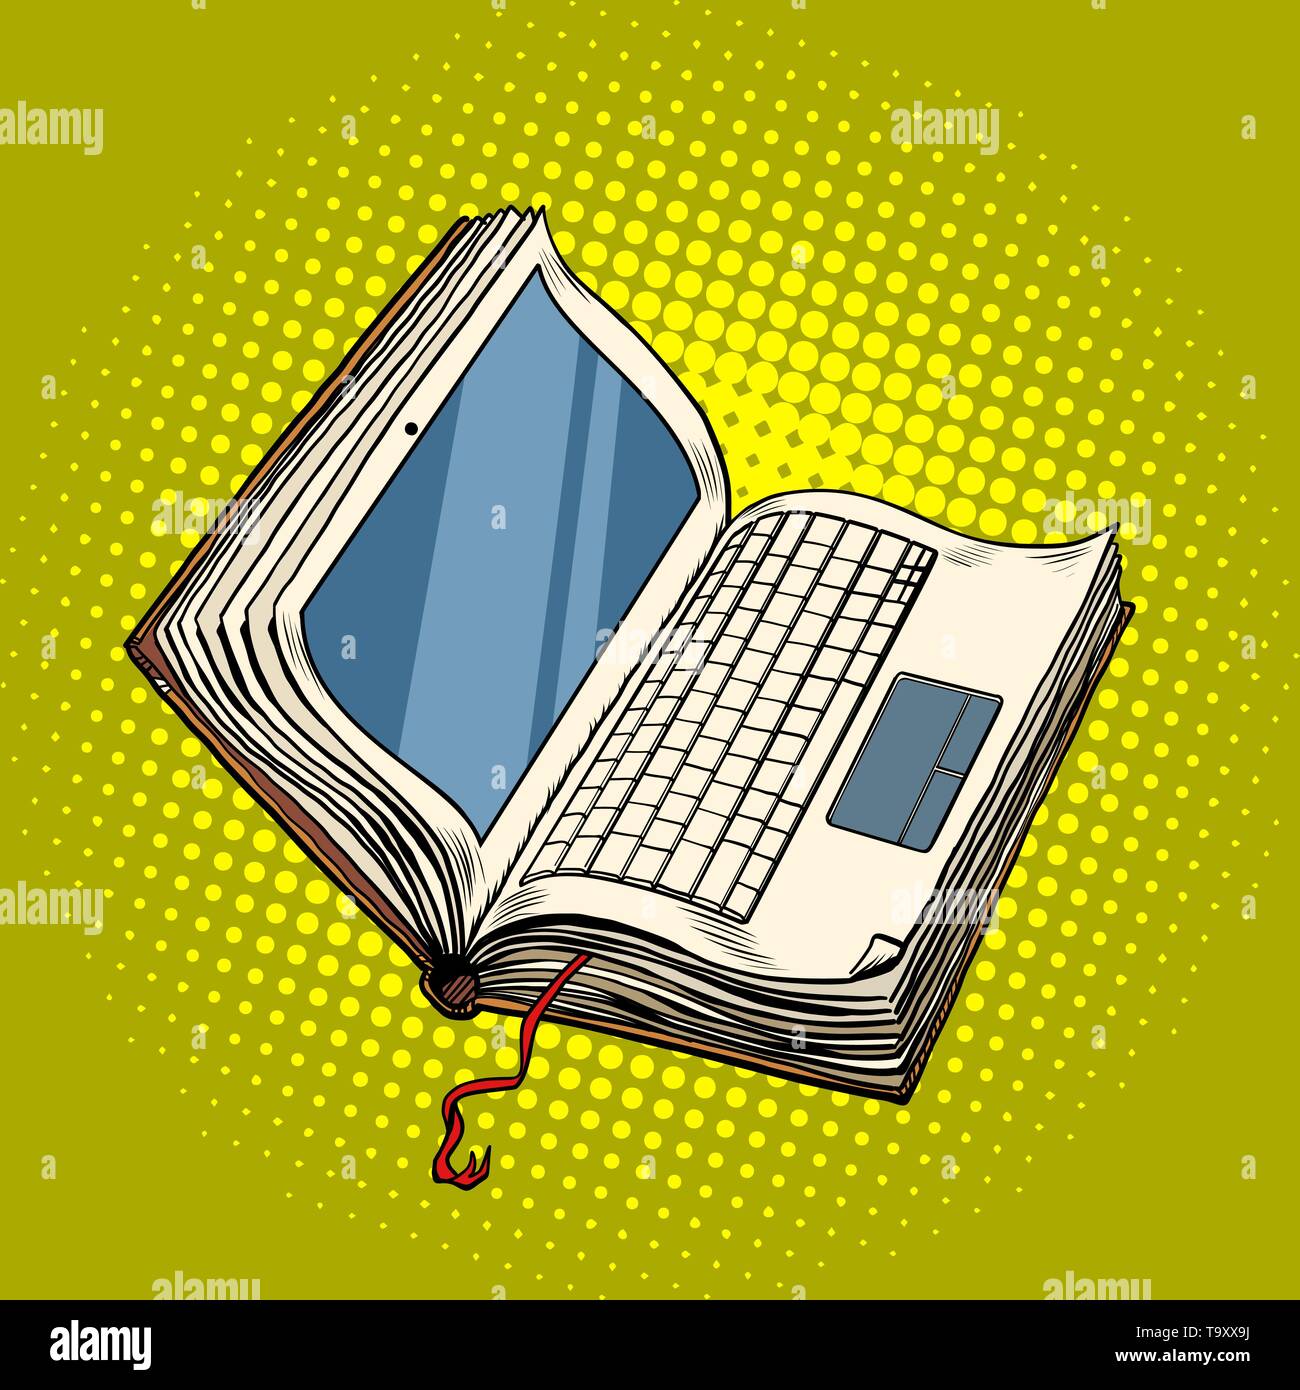 Aprendizaje En Línea De Literatura Digital De Libros Portátiles